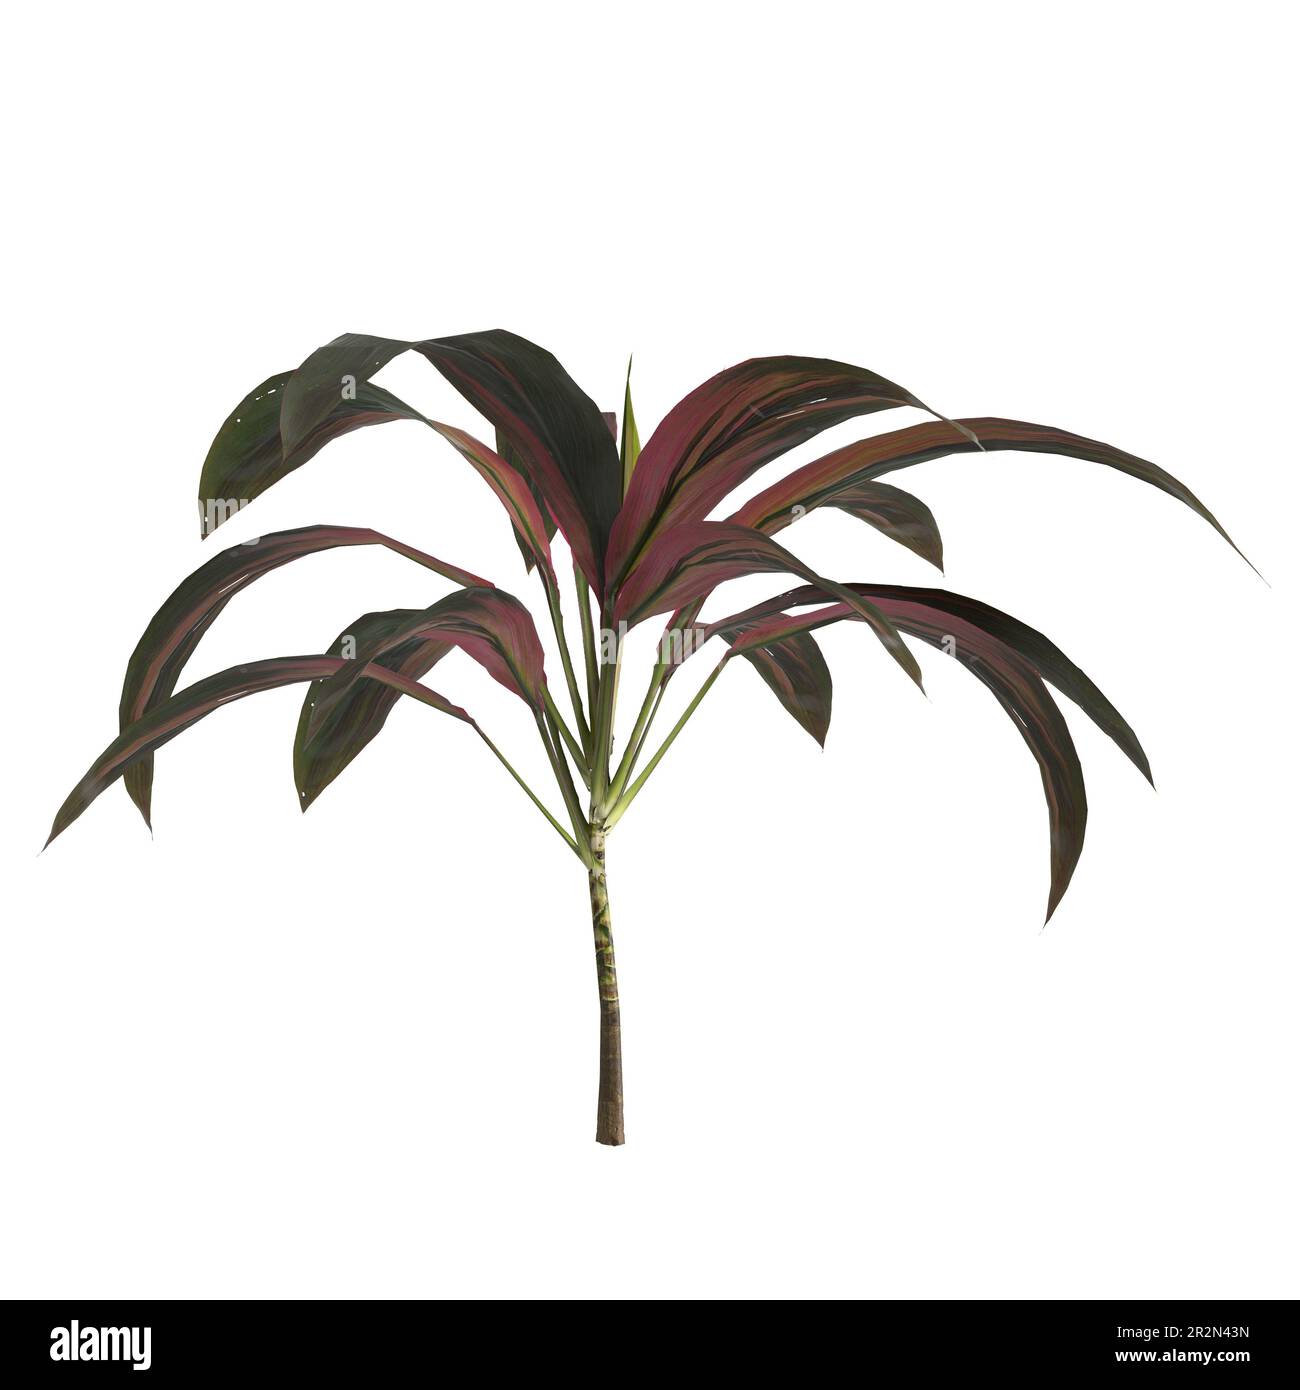 3d illustration of set cordyline fruticosa plant isolated on white background Stock Photo